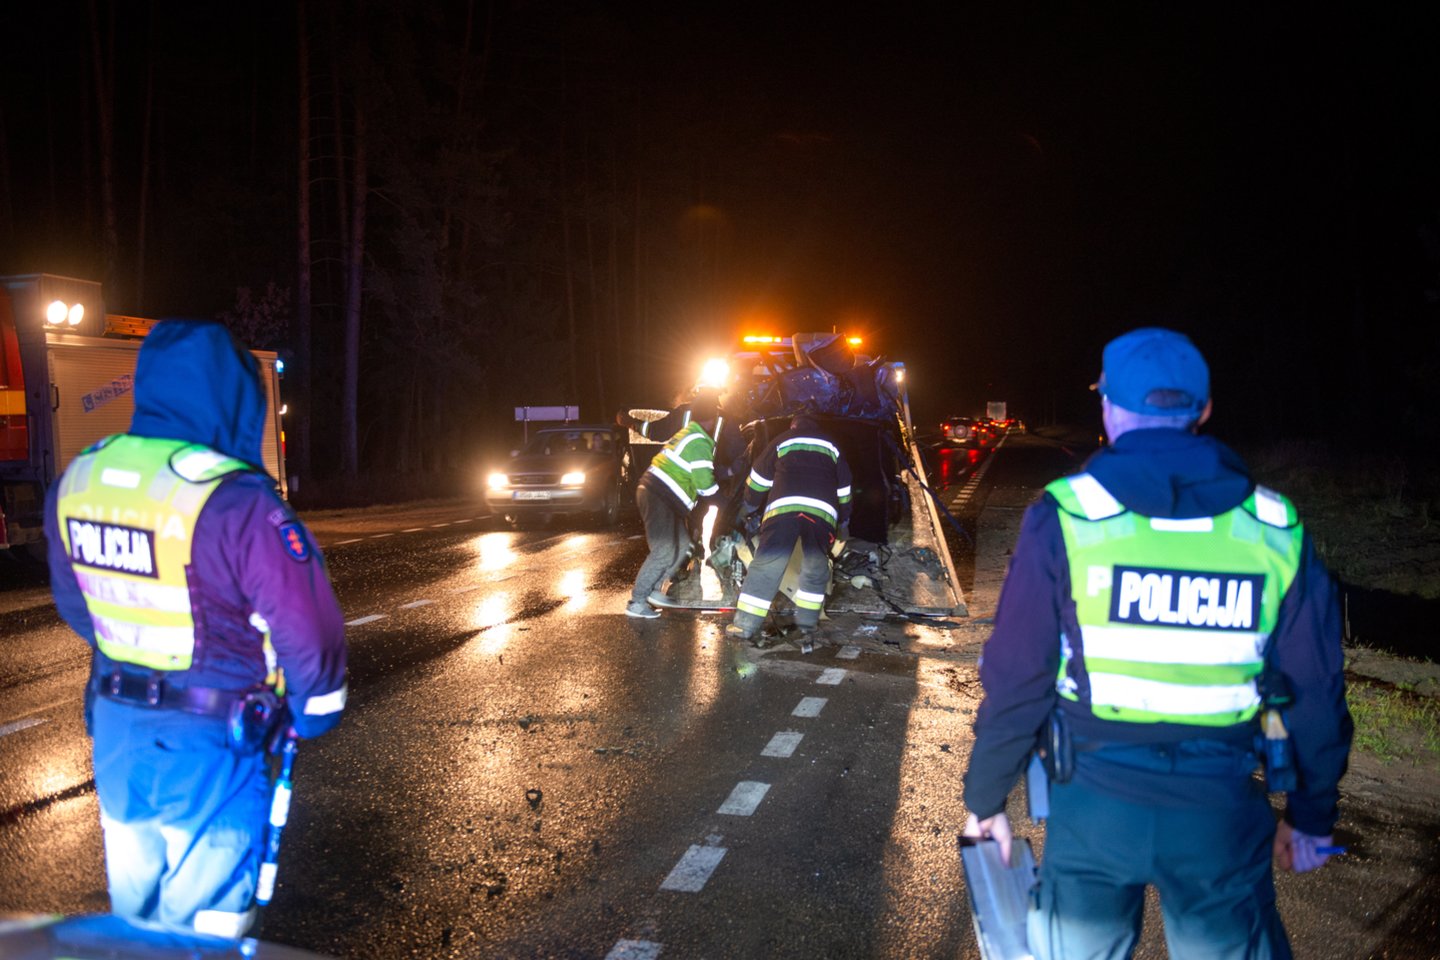  Vilniaus rajone BMW įlėkus į griovį, įvyko dar viena avarija: susidūrė ugniagesių ir policijos automobiliai. <br> J. Stacevičiaus asociatyvioji nuotr. 